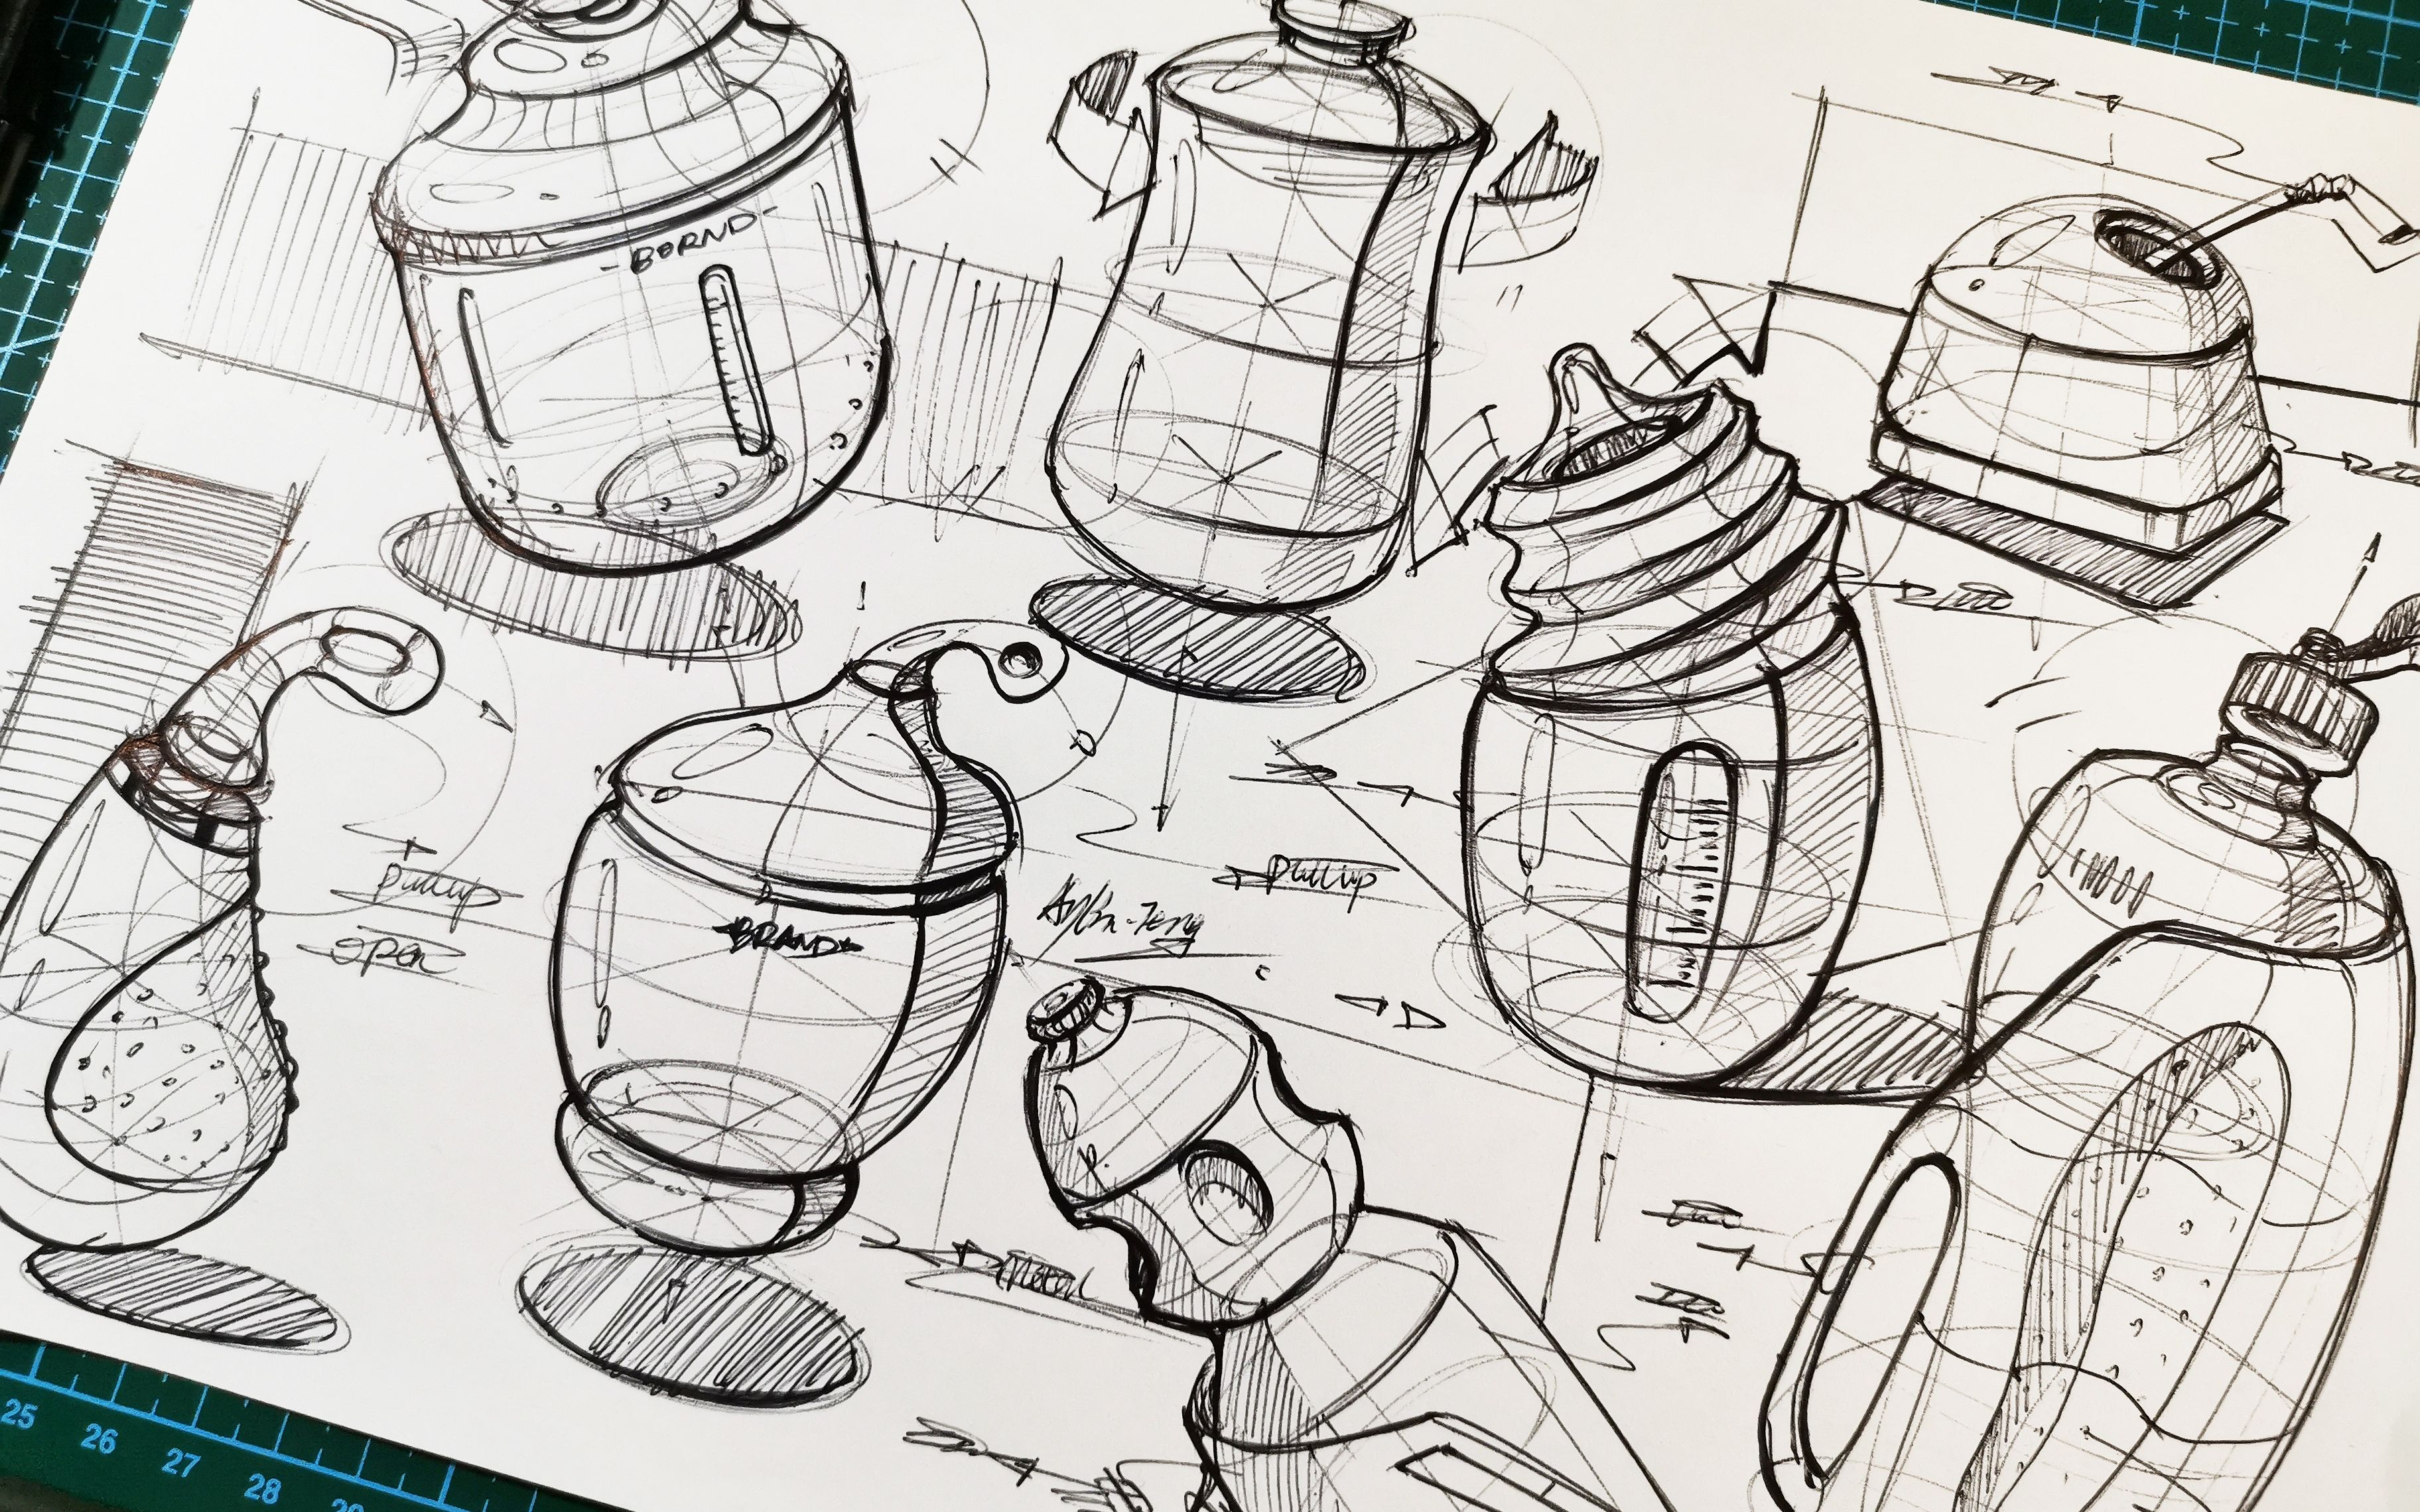 【产品设计手绘】十分钟看圆珠笔画瓶瓶罐罐,造型发散